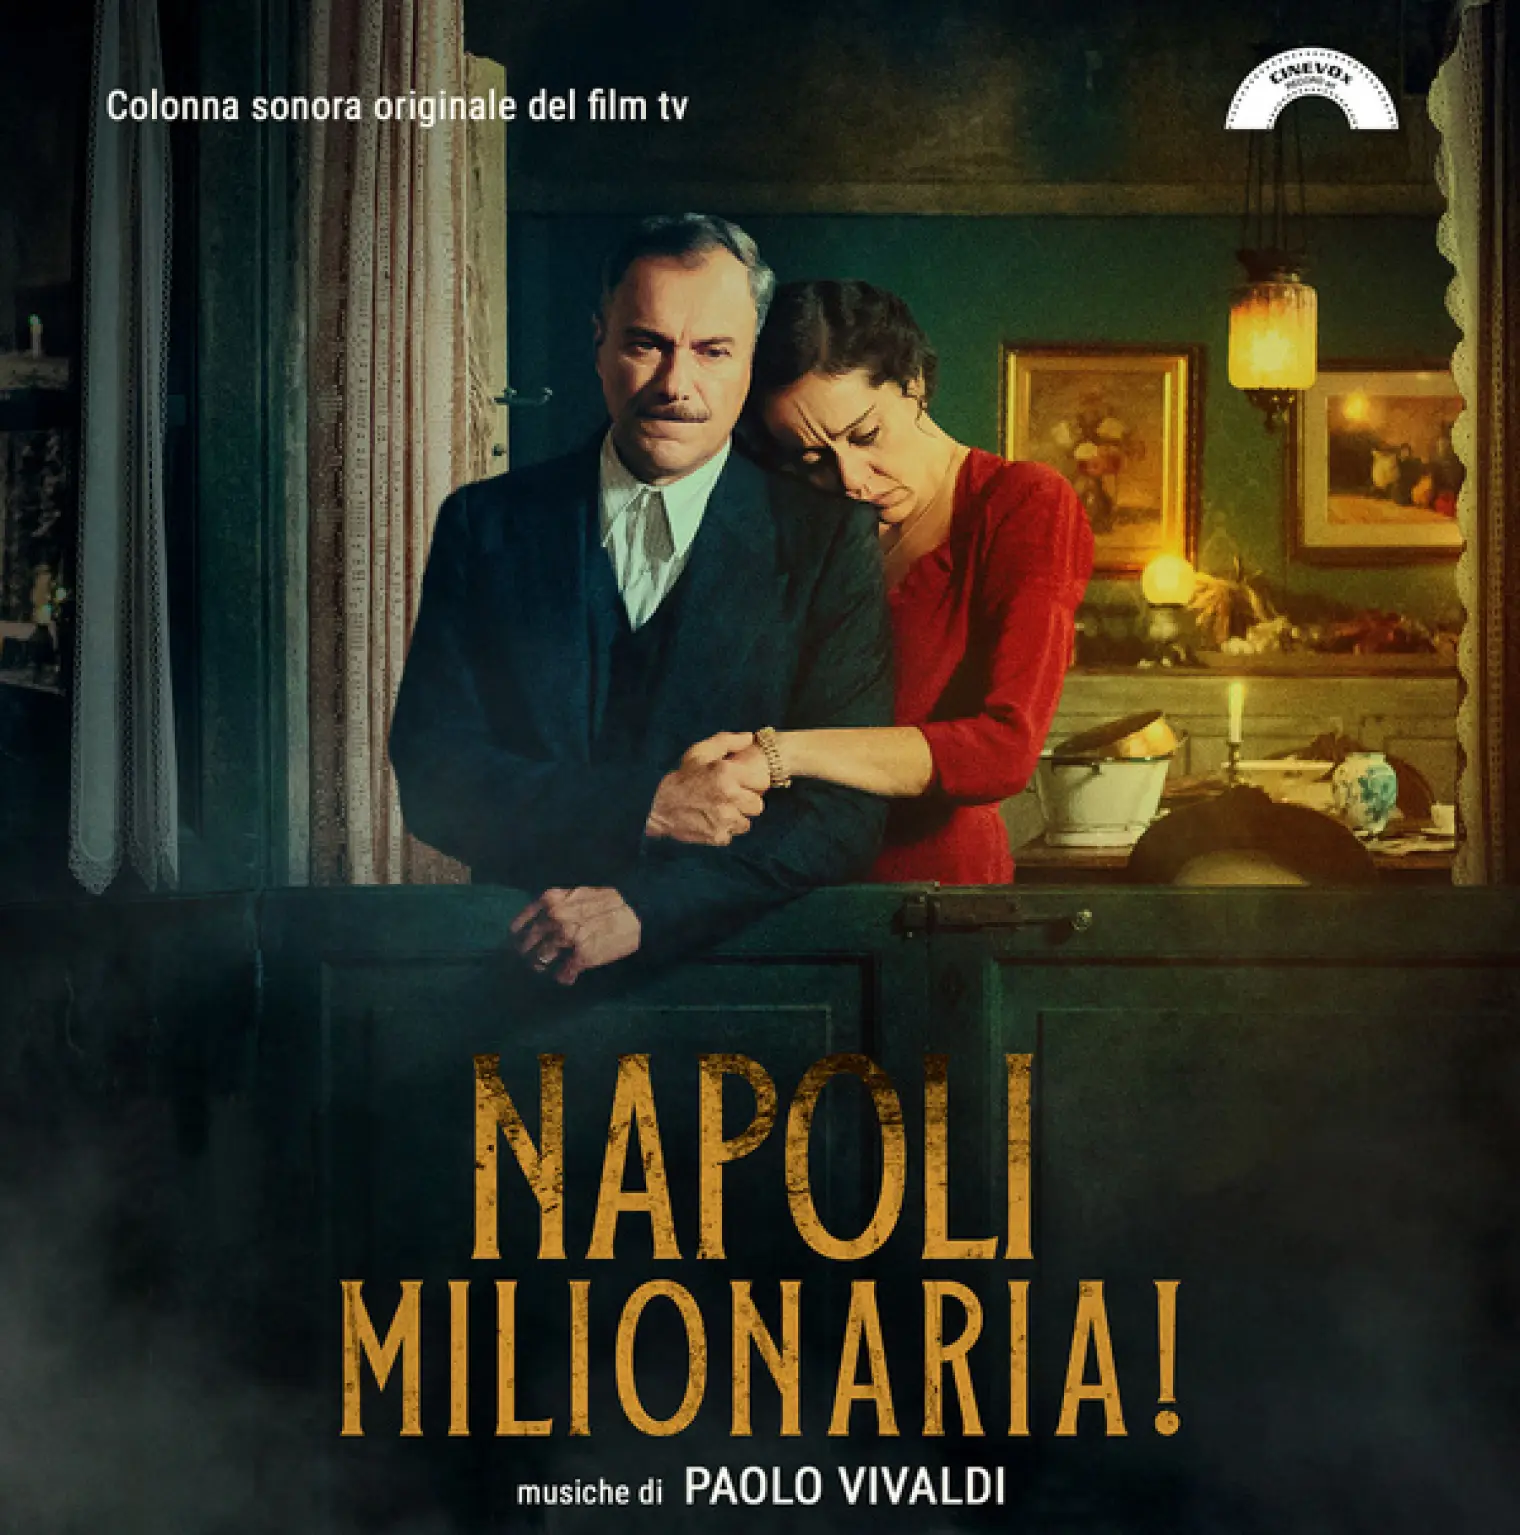 Napoli Milionaria! (Colonna sonora originale del film tv) -  Paolo Vivaldi 